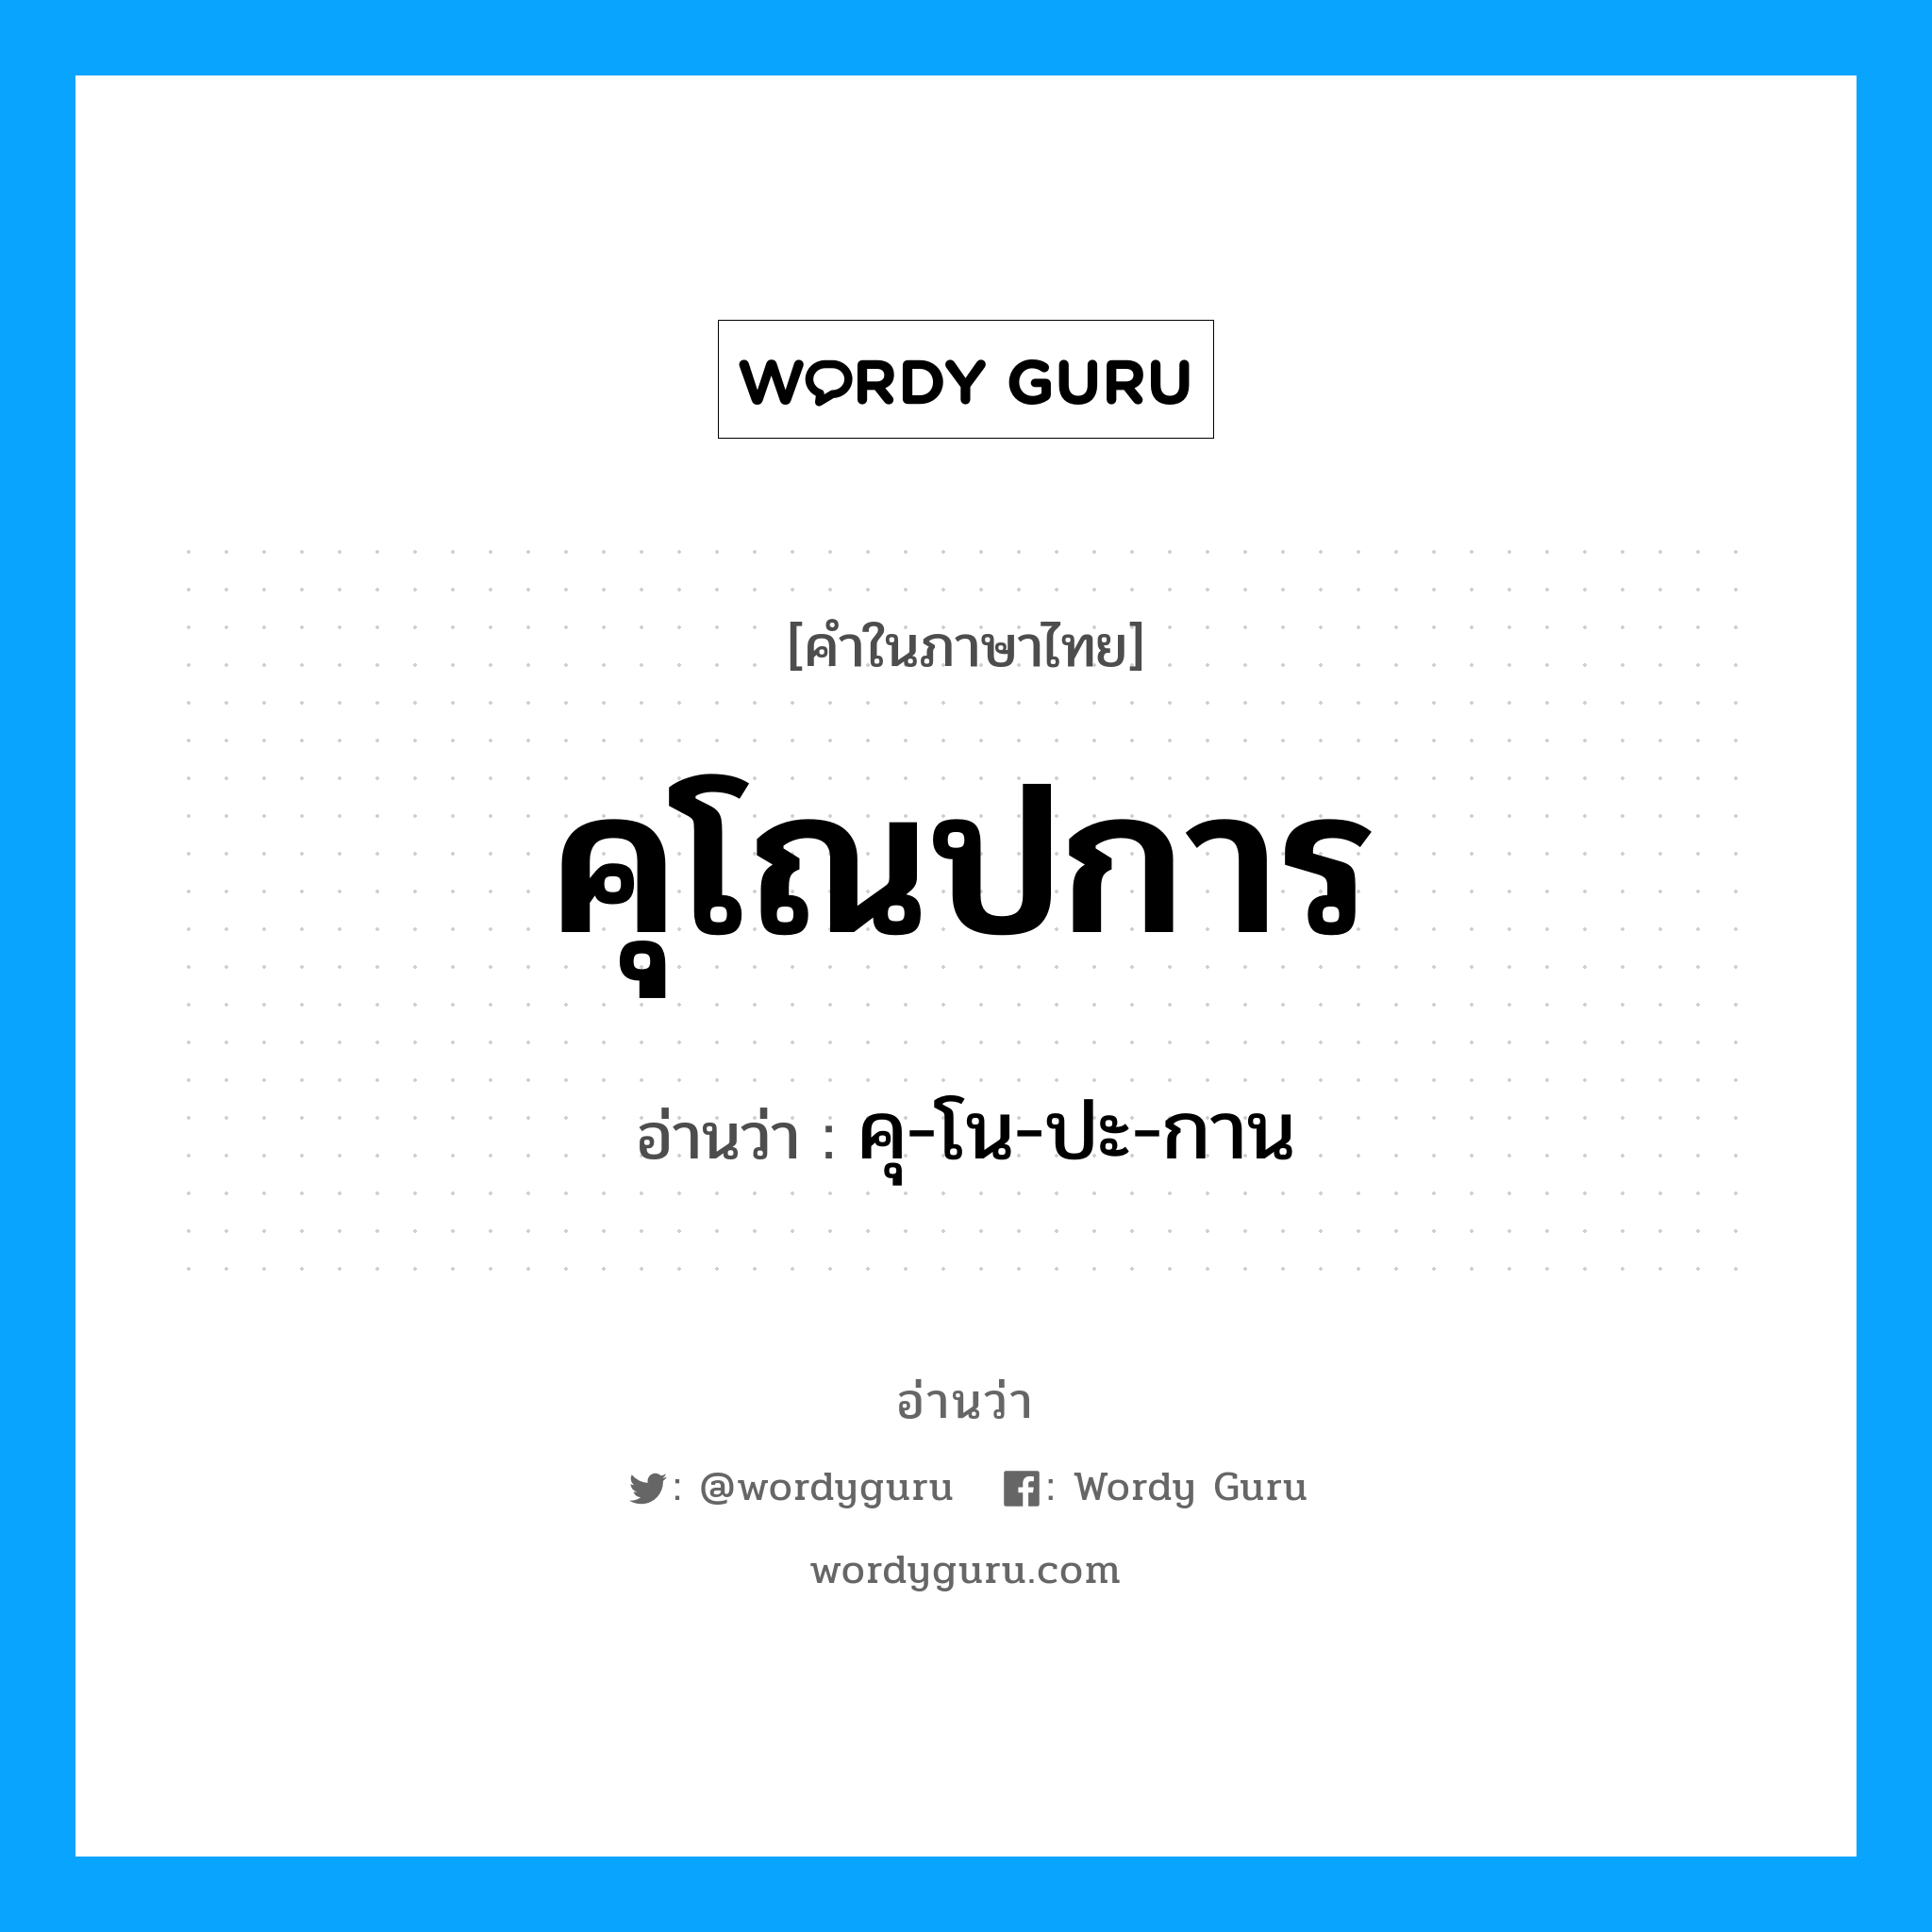 คุโณปการ อ่านว่า?, คำในภาษาไทย คุโณปการ อ่านว่า คุ-โน-ปะ-กาน